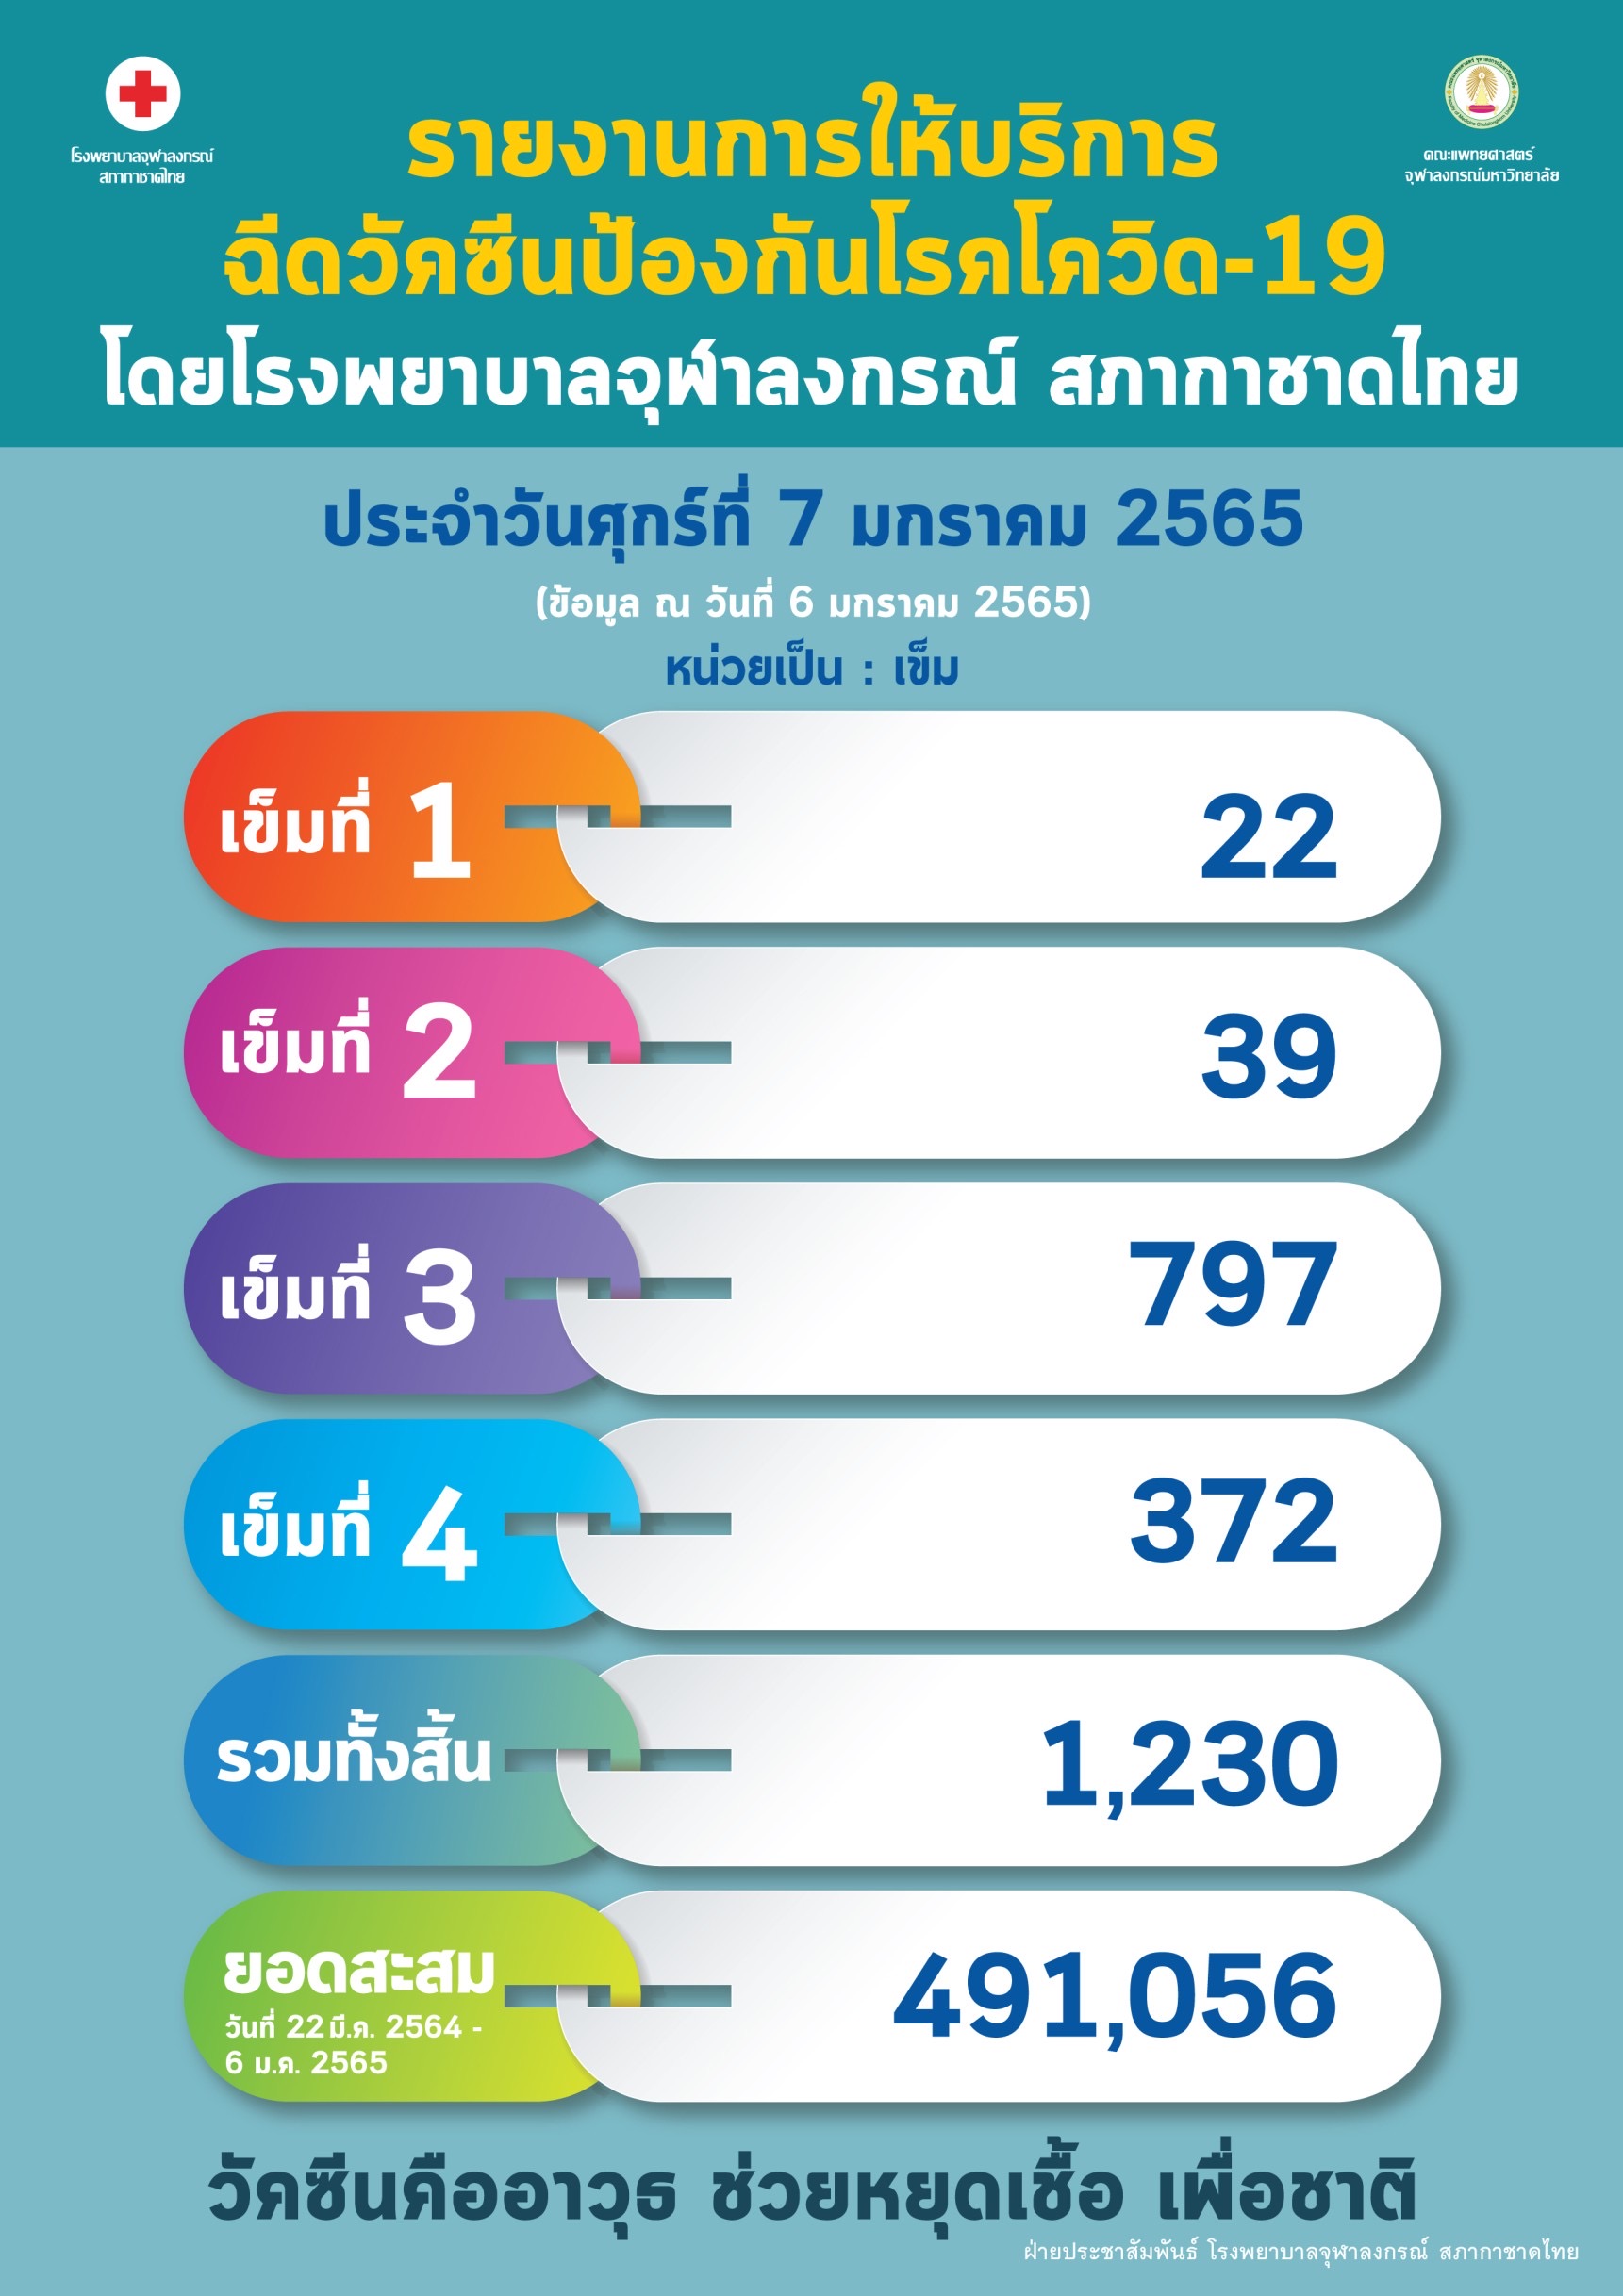 รายงานการให้บริการ ฉีดวัคซีนป้องกันโรคโควิด-19 โดยโรงพยาบาลจุฬาลงกรณ์ สภากาชาดไทย ประจำวันศุกร์ที่ 7 มกราคม 2565